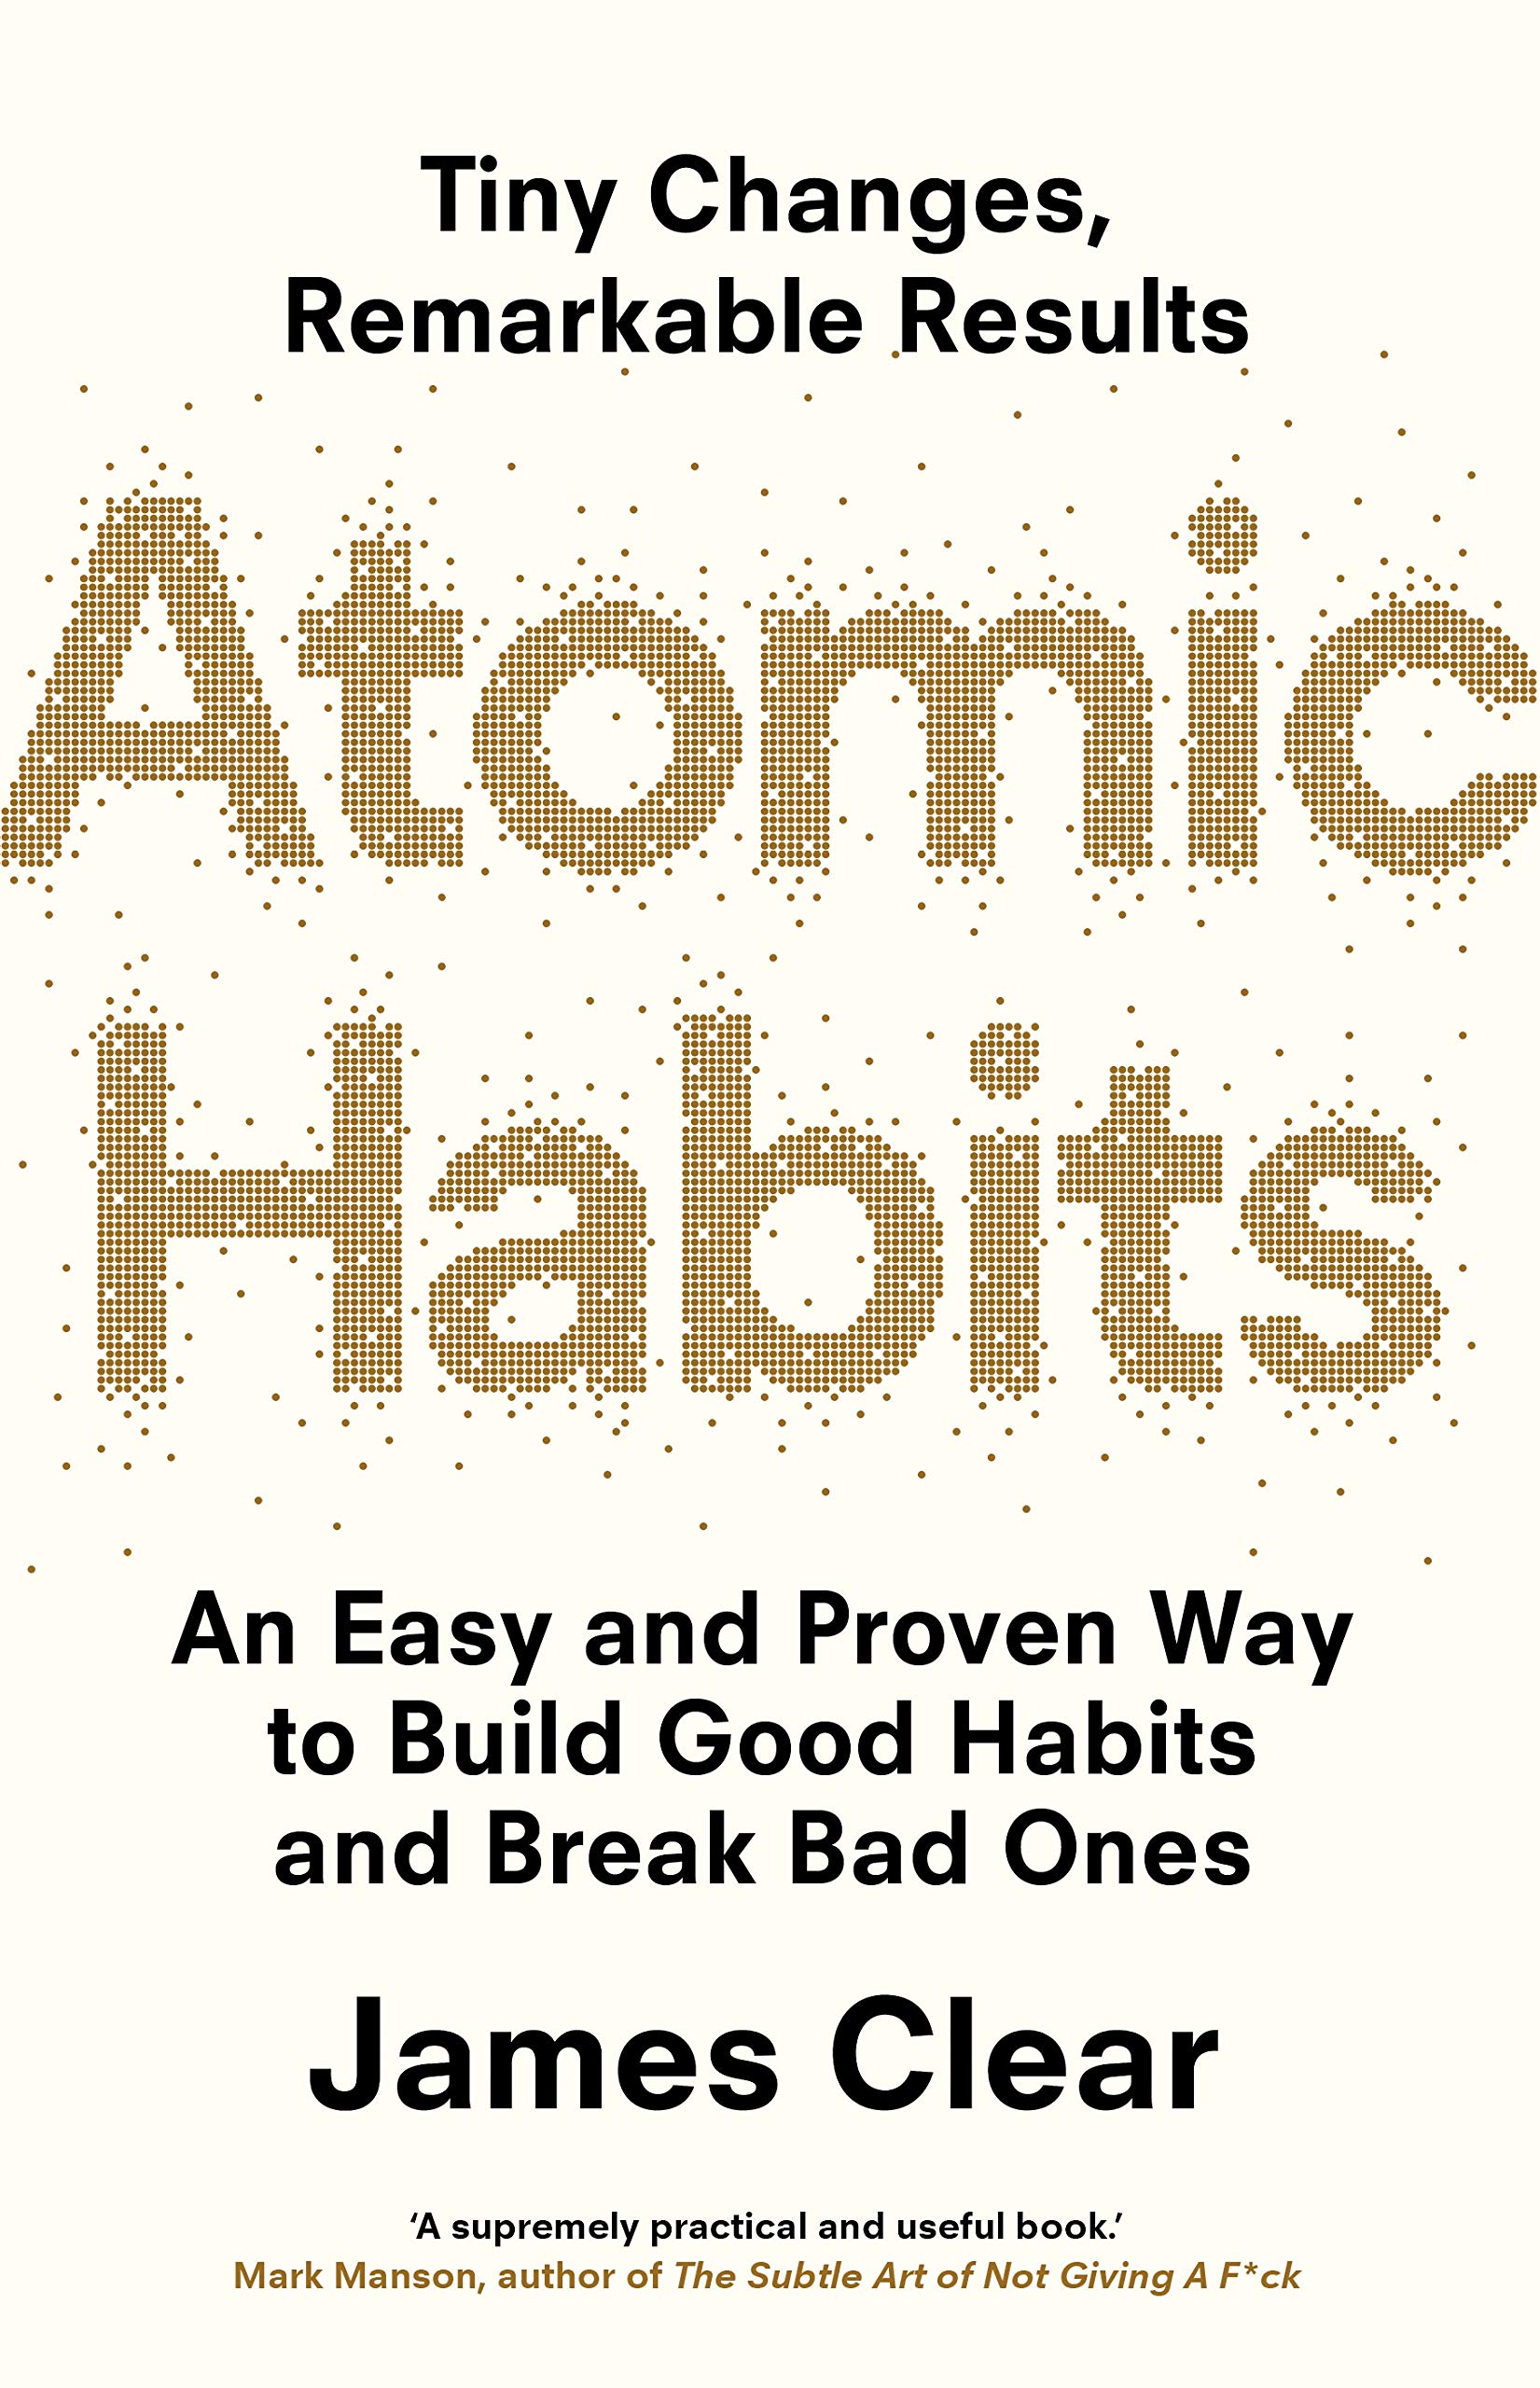 Atomic Habits (les micro habitudes) - James Clear (Résumé